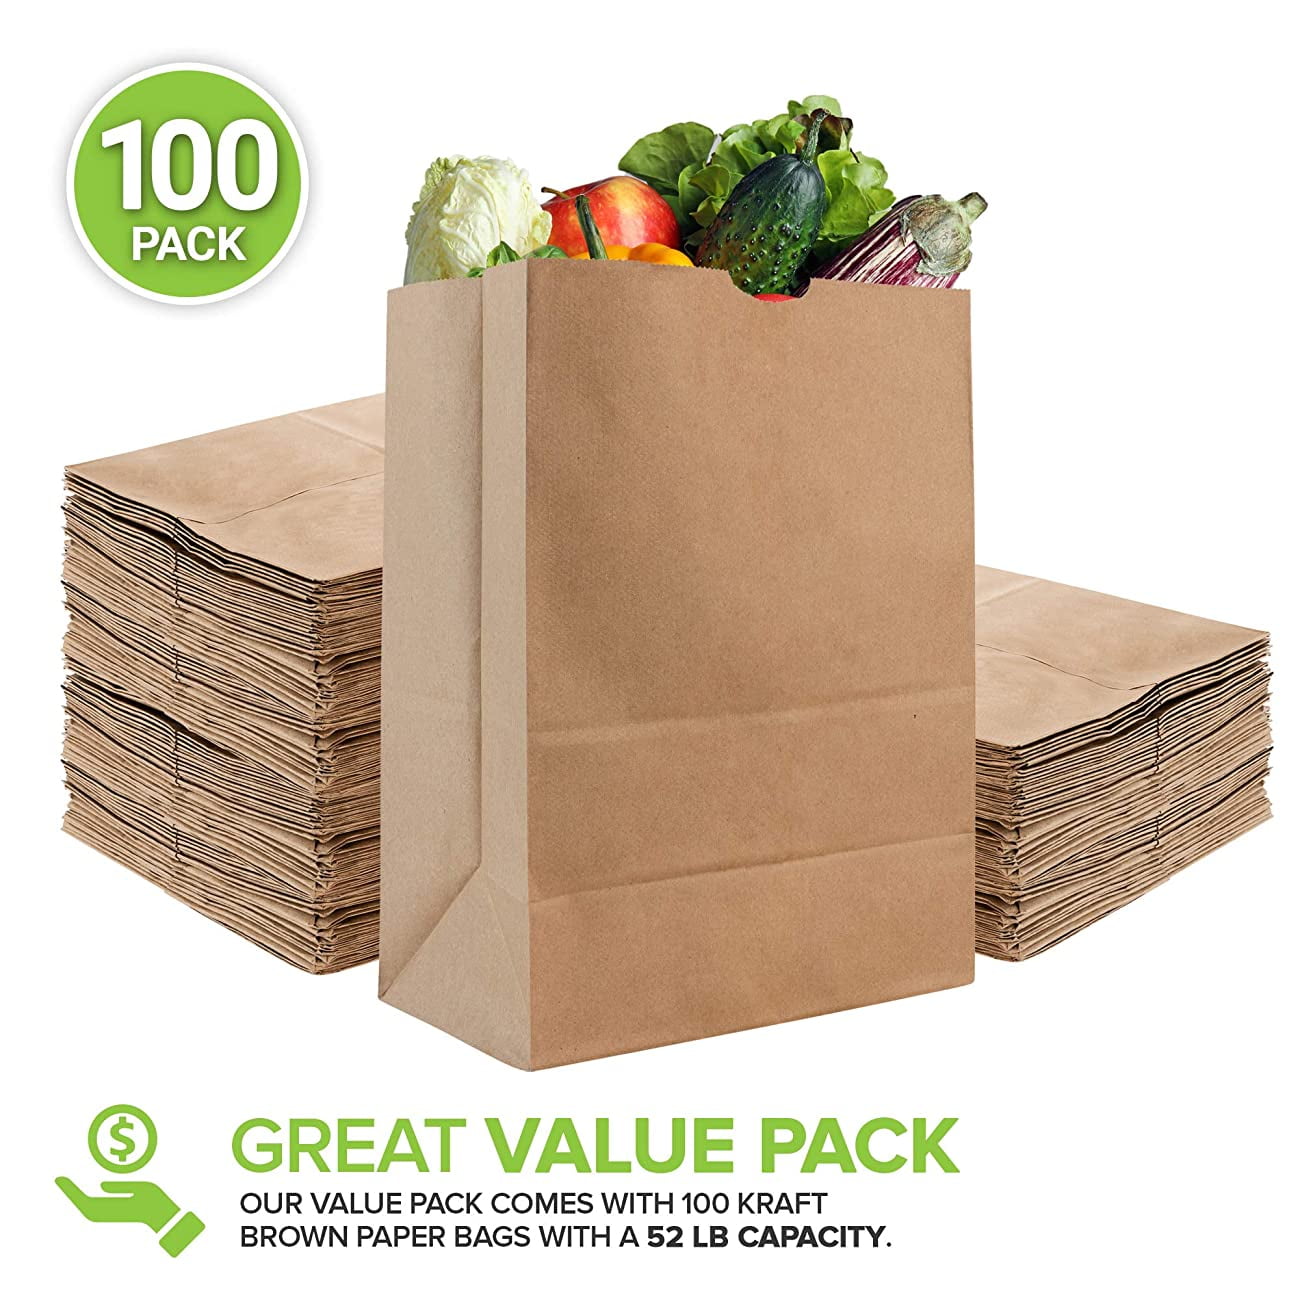  Culinware Kraft Paper Bags 3 Lb - Durable Brown Paper